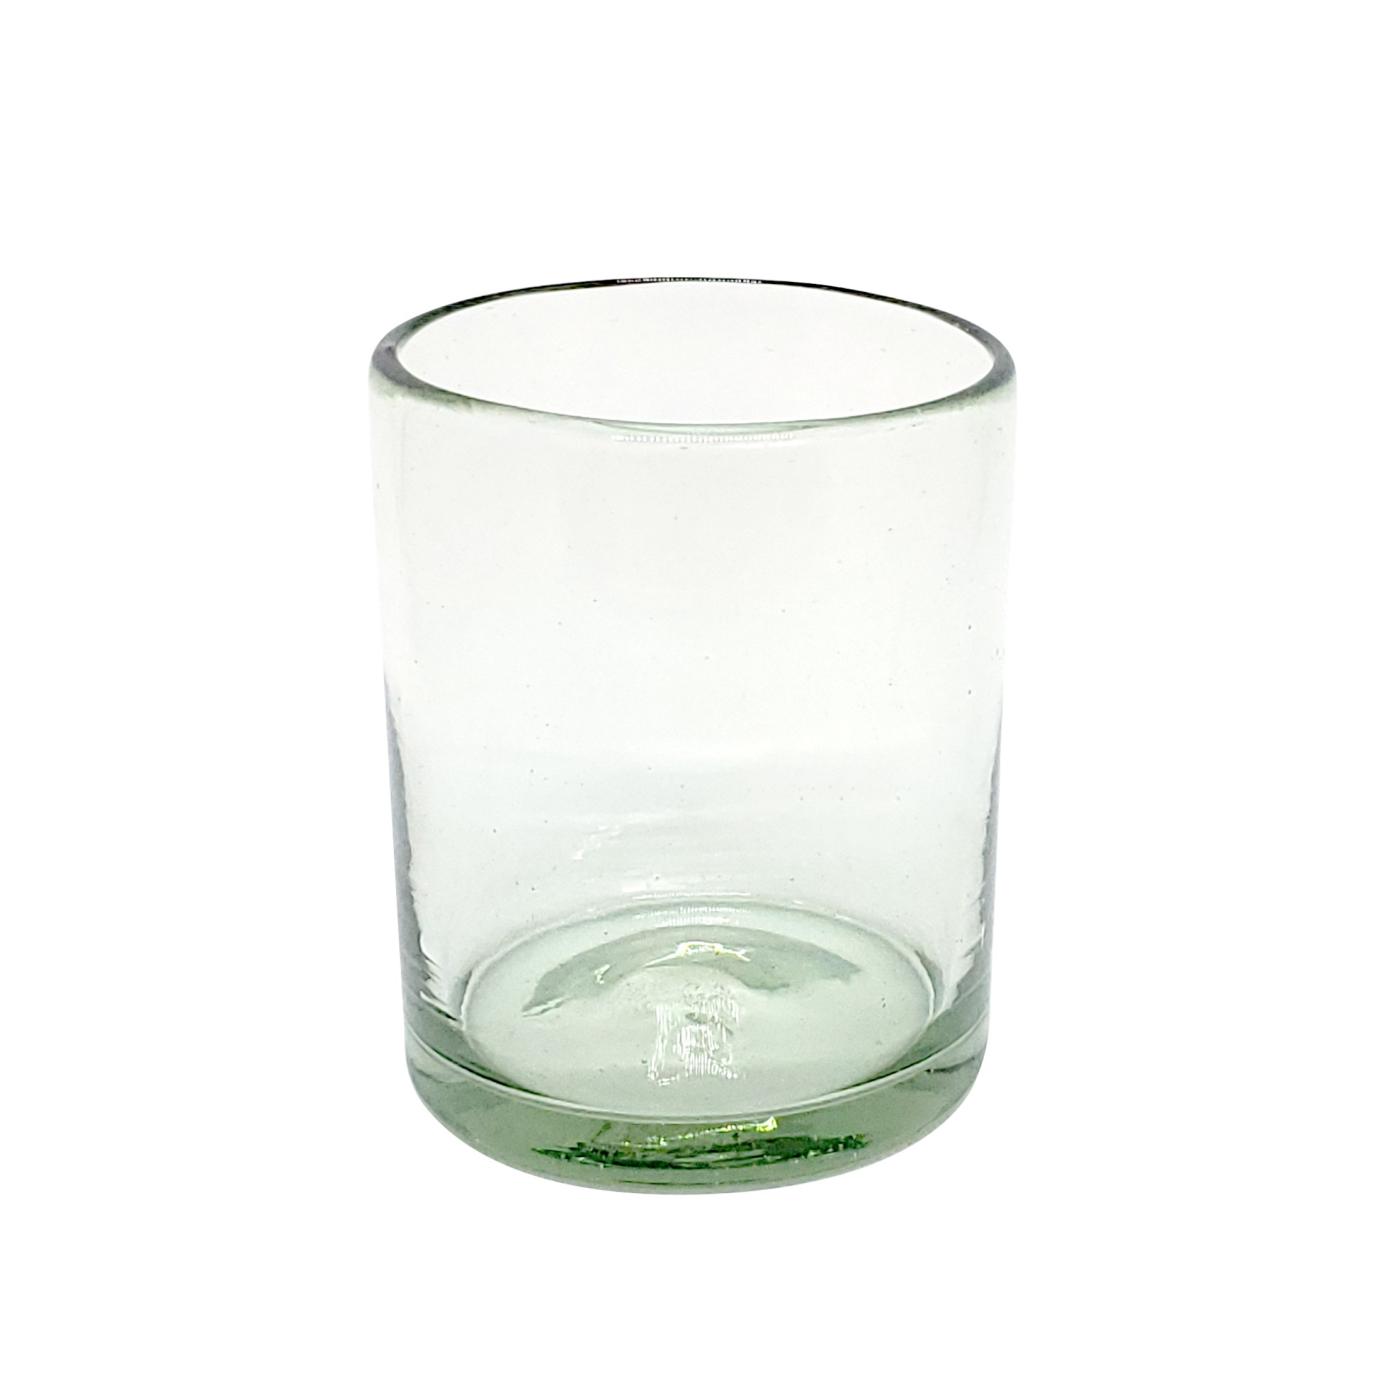 Vasos de Vidrio Soplado al Mayoreo / vasos chicos transparentes / Para una apariencia ms tradicional, stos vasos de vidrio soplado son creados de manera 100% artesanal.